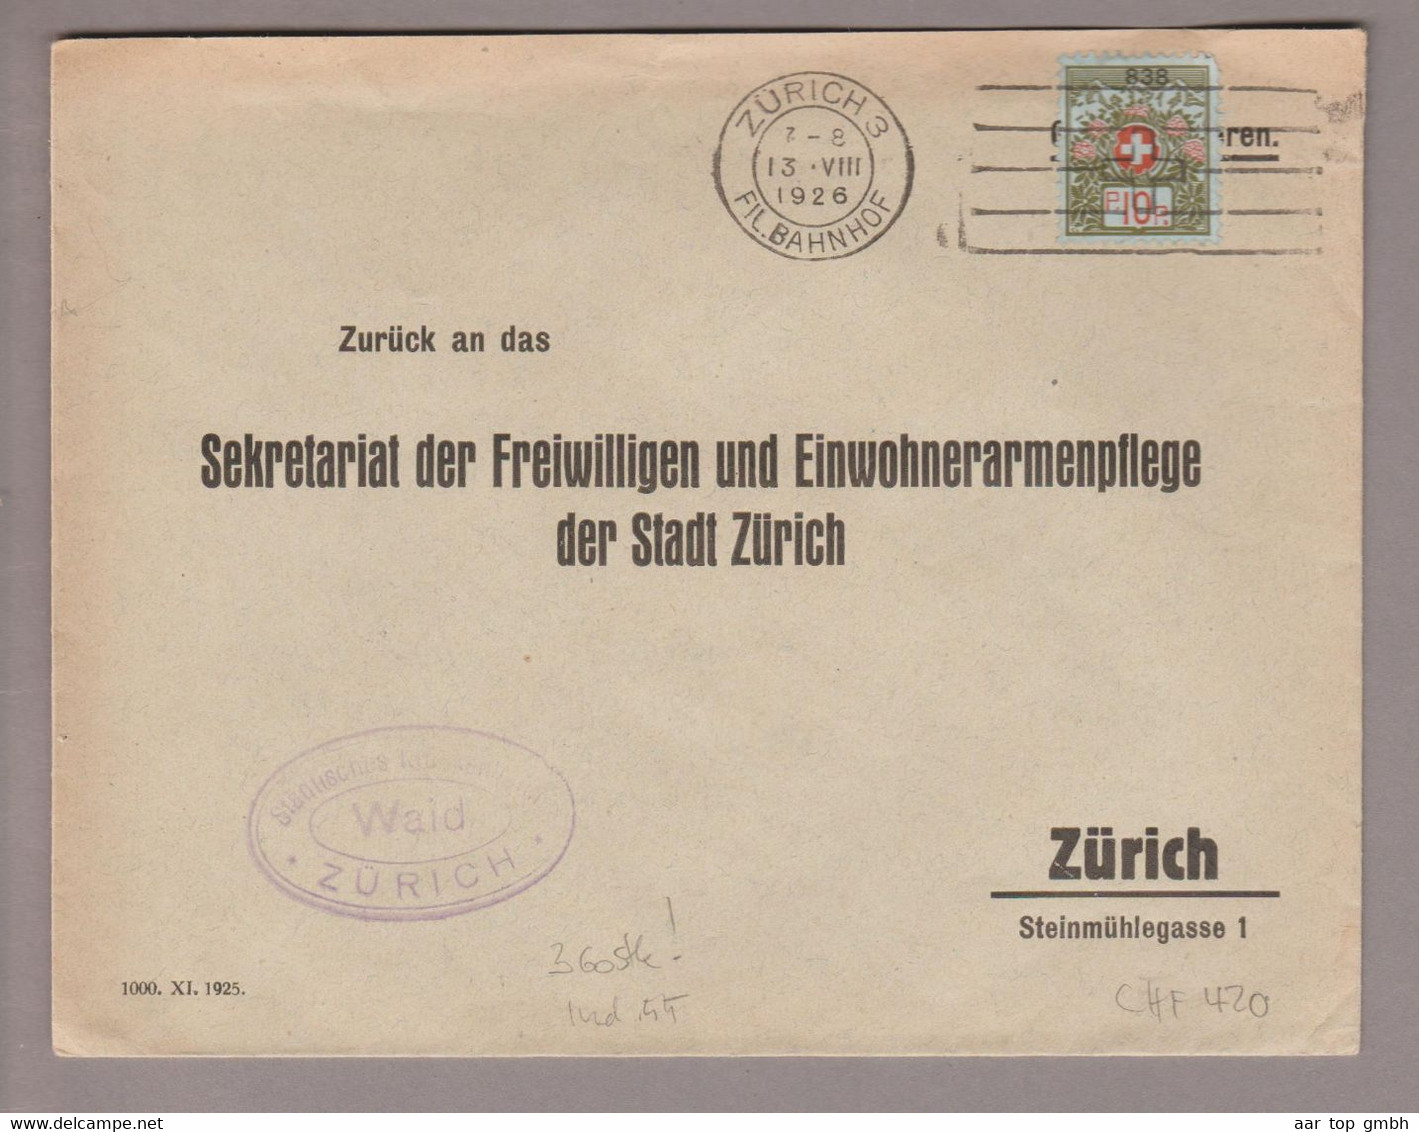 CH Portofreiheit Zu#9 10Rp. GR#838 Brief 1926-08-13 Zürich Städtisches Krankenheim Wald (360Stk.10Rp.) - Vrijstelling Van Portkosten